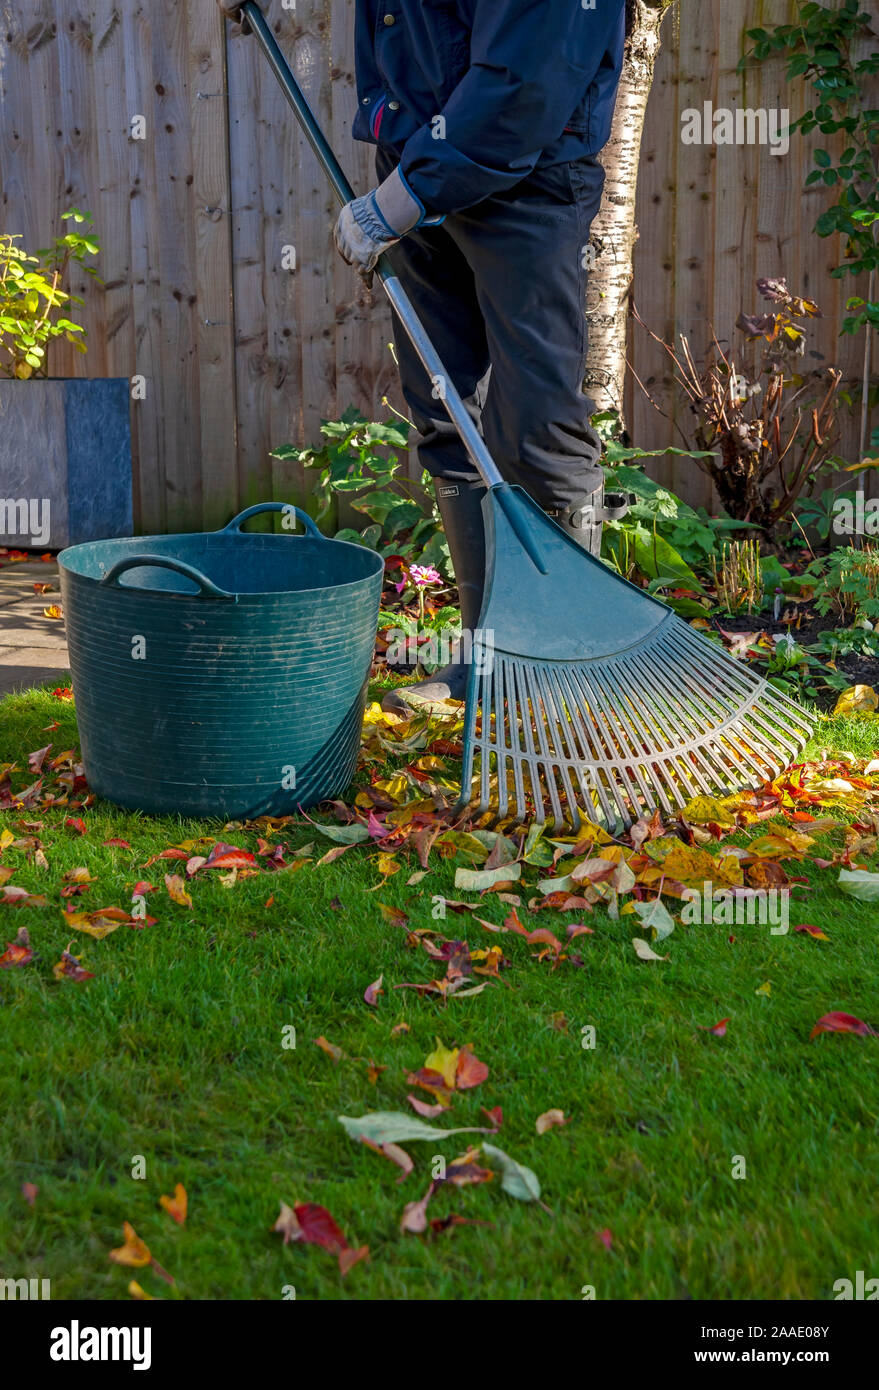 Gros plan de l'homme jardinier personne ratissant et collectant les feuilles tombées d'une pelouse dans le jardin à l'automne Angleterre Royaume-Uni Royaume-Uni Grande-Bretagne Banque D'Images